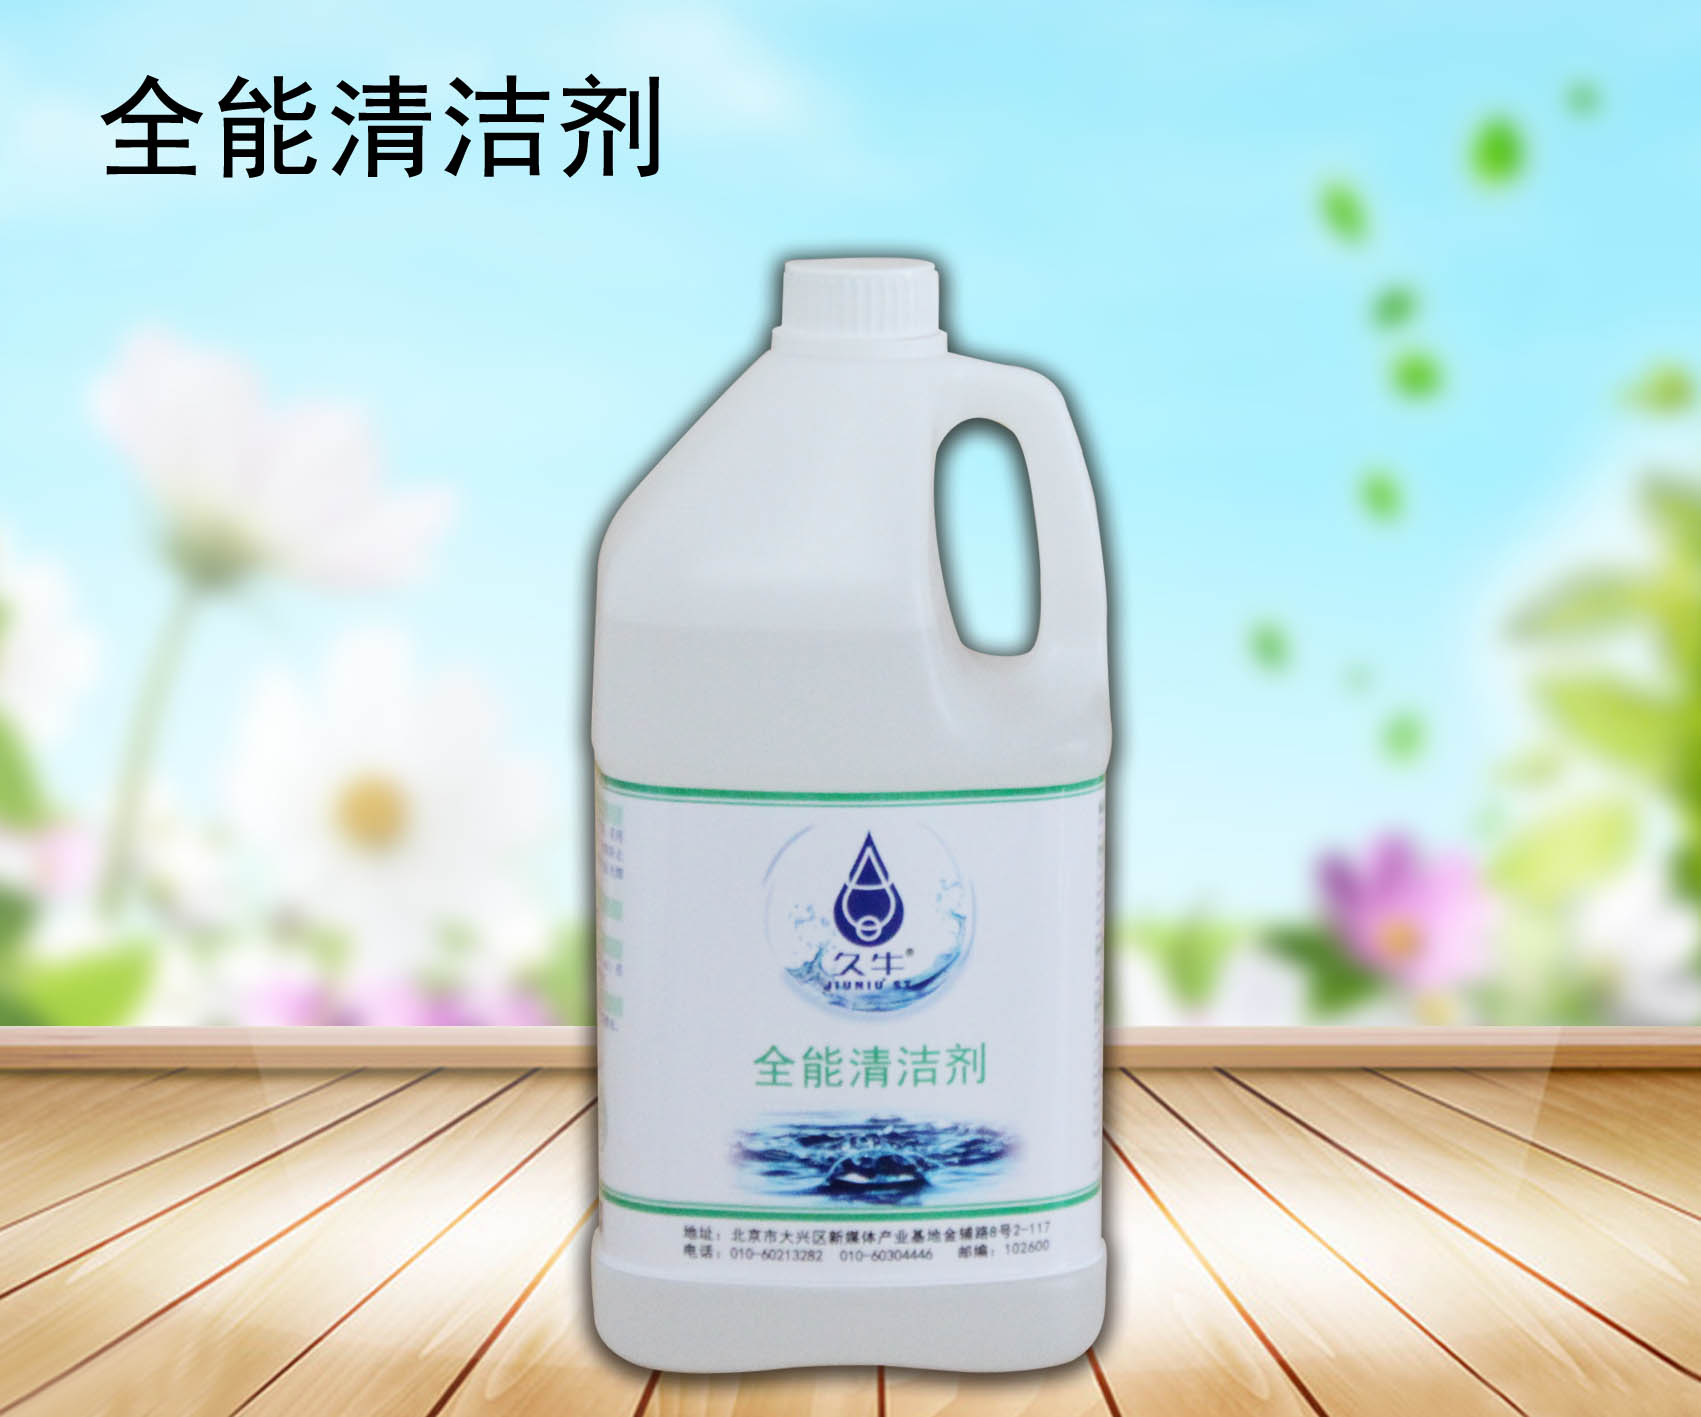 北京市洗手液厂家厂家批发洗手液北京久牛科技有限公司